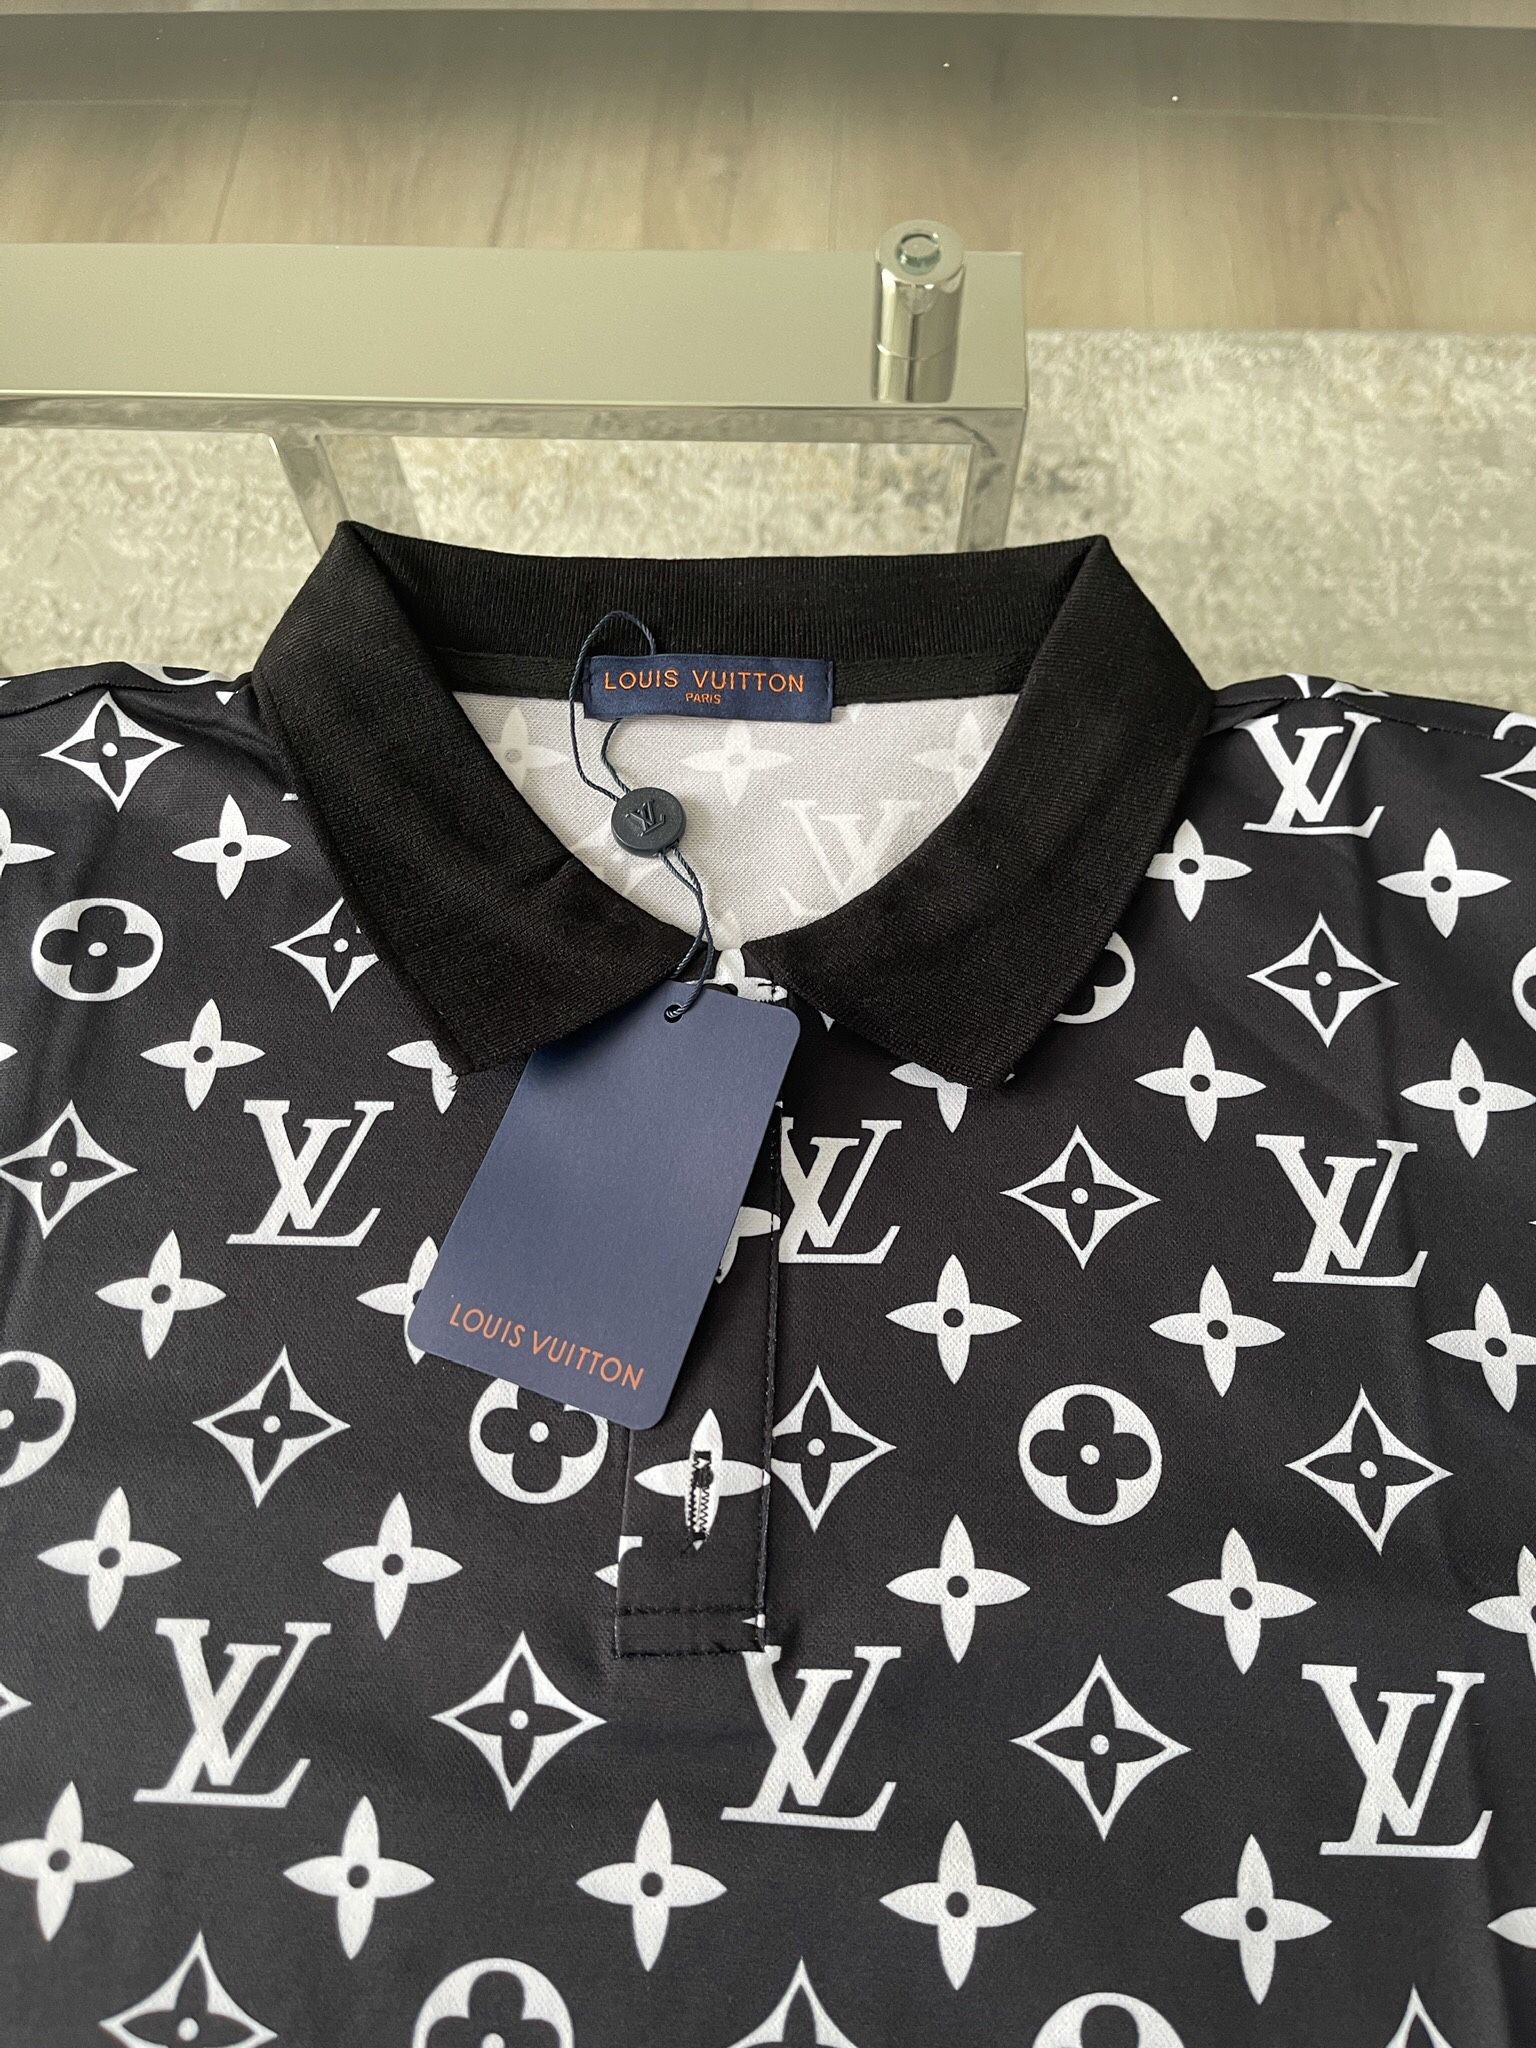 Louis Vuitton Tee Shirt for Sale in Grand Prairie, TX - OfferUp